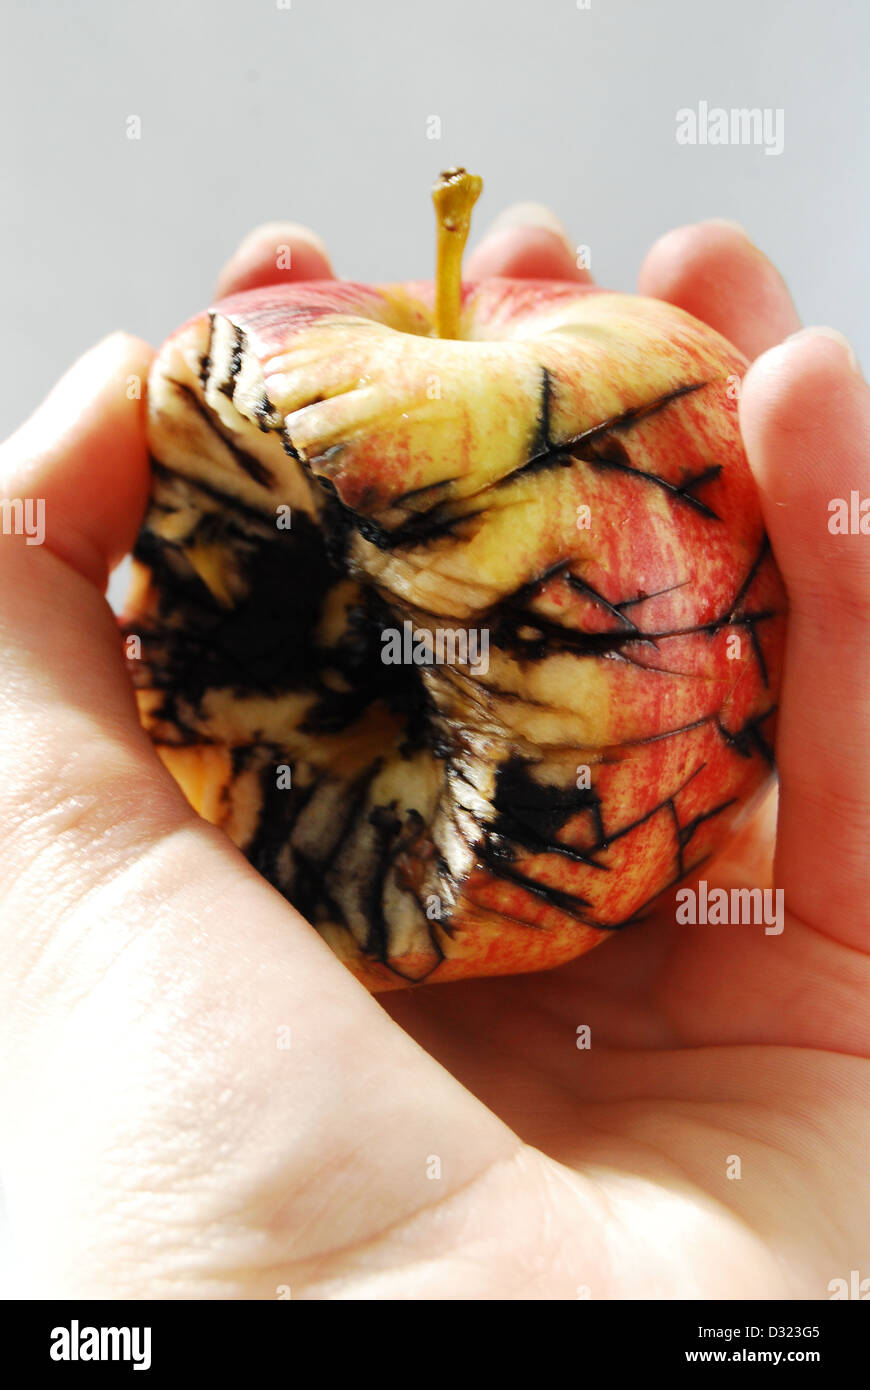 Ein roter und gelber Apfel auf einem weißen Hintergrund, statt von einer Hand mit schwarze Risse und Schimmel zeigen Verfall und Fäulnis Frucht gebissen Stockfoto